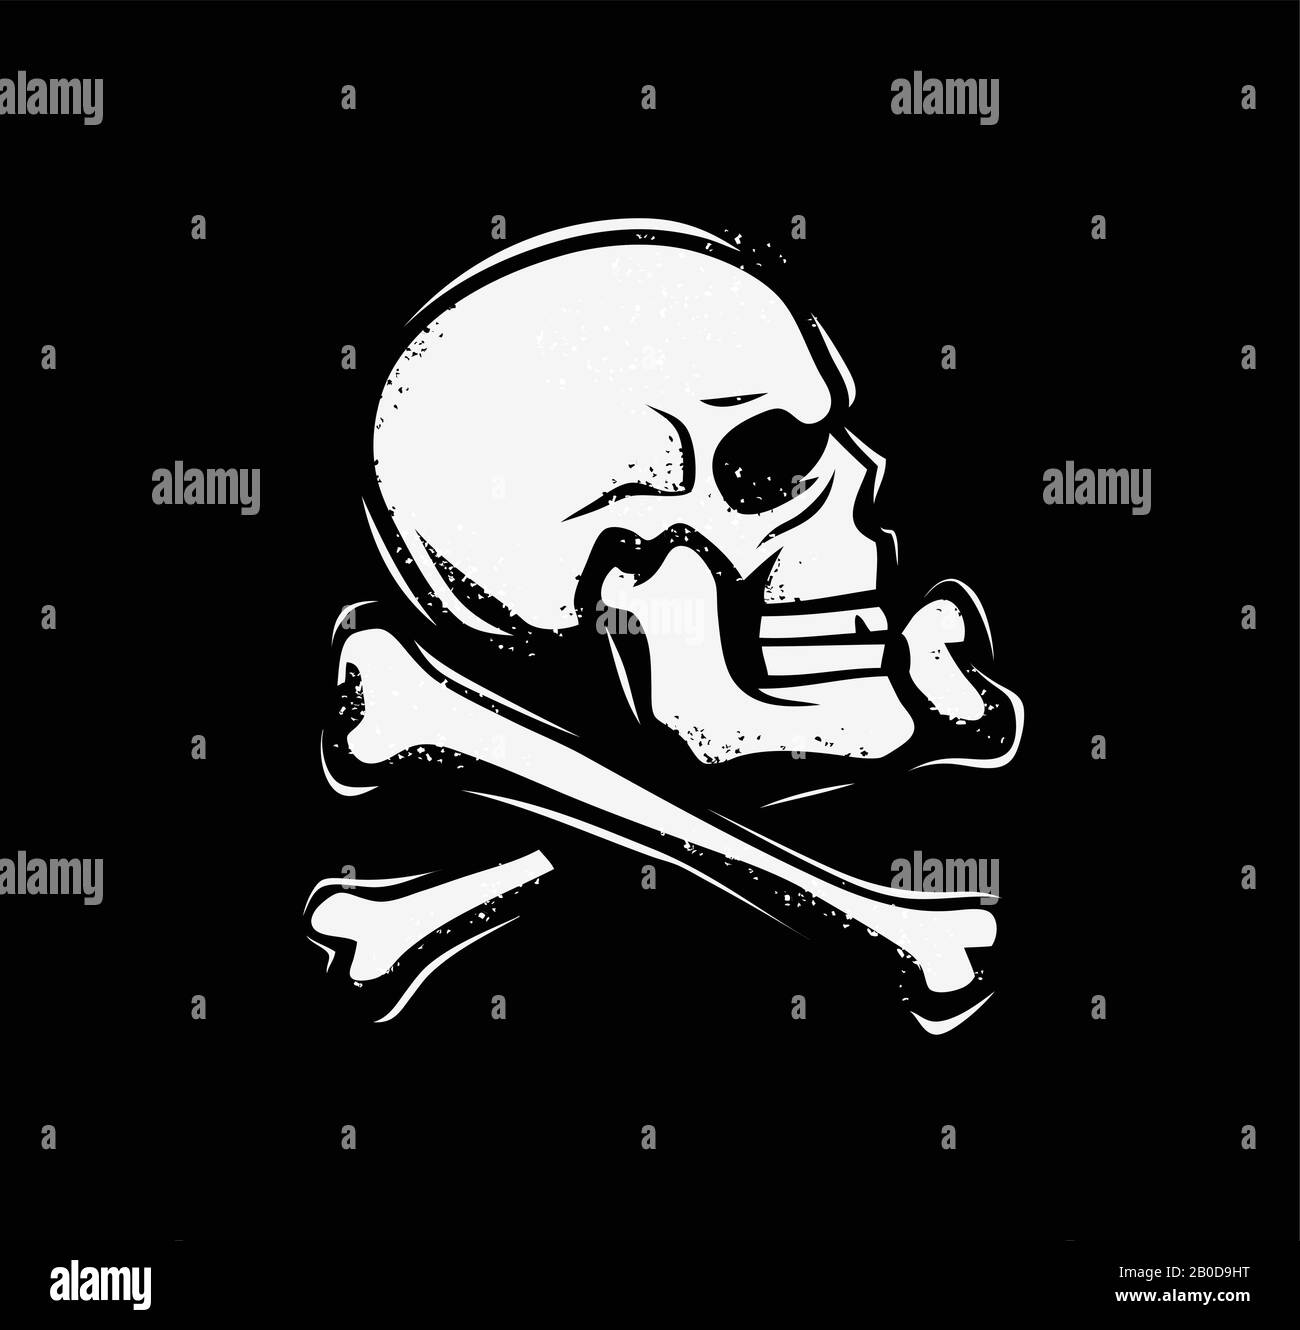 Jolly Roger symbol. Pirate flag, skull and crossbones emblem vector illustration Stock Vector